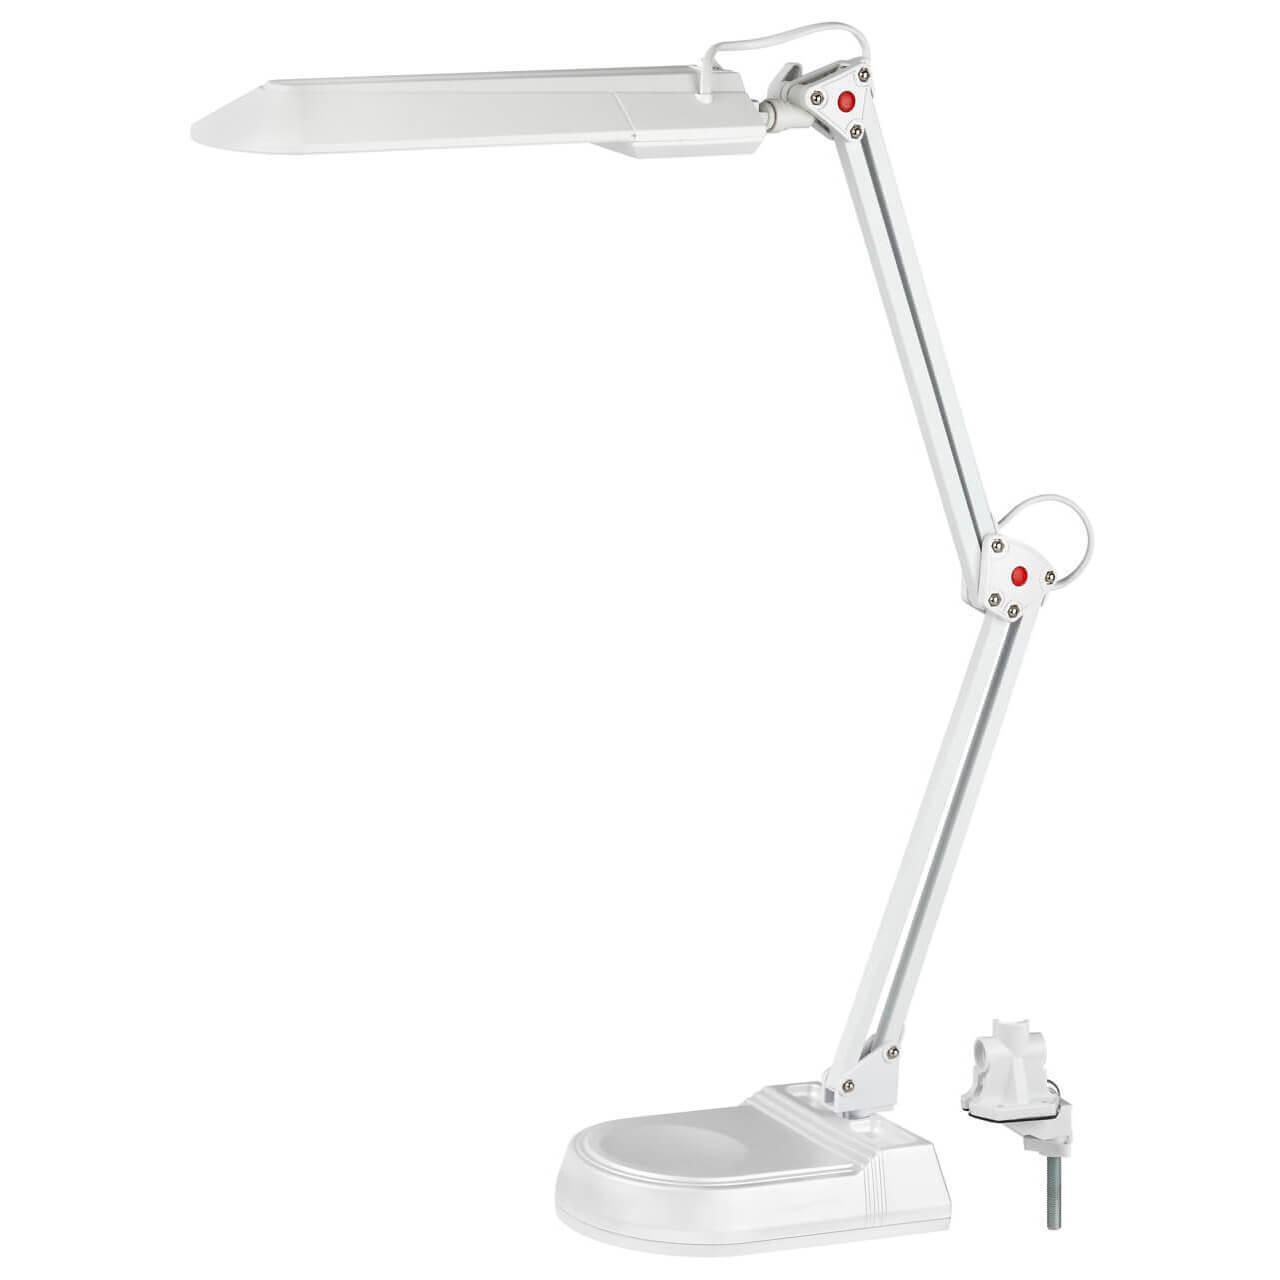 Настольная лампа ЭРА NL-202-G23-11W-W C0041460 andoer e27 40w энергосберегающая светодиодная лампа 3200k желтая теплая лампа для фотостудии видео домашнее коммерческое освещение